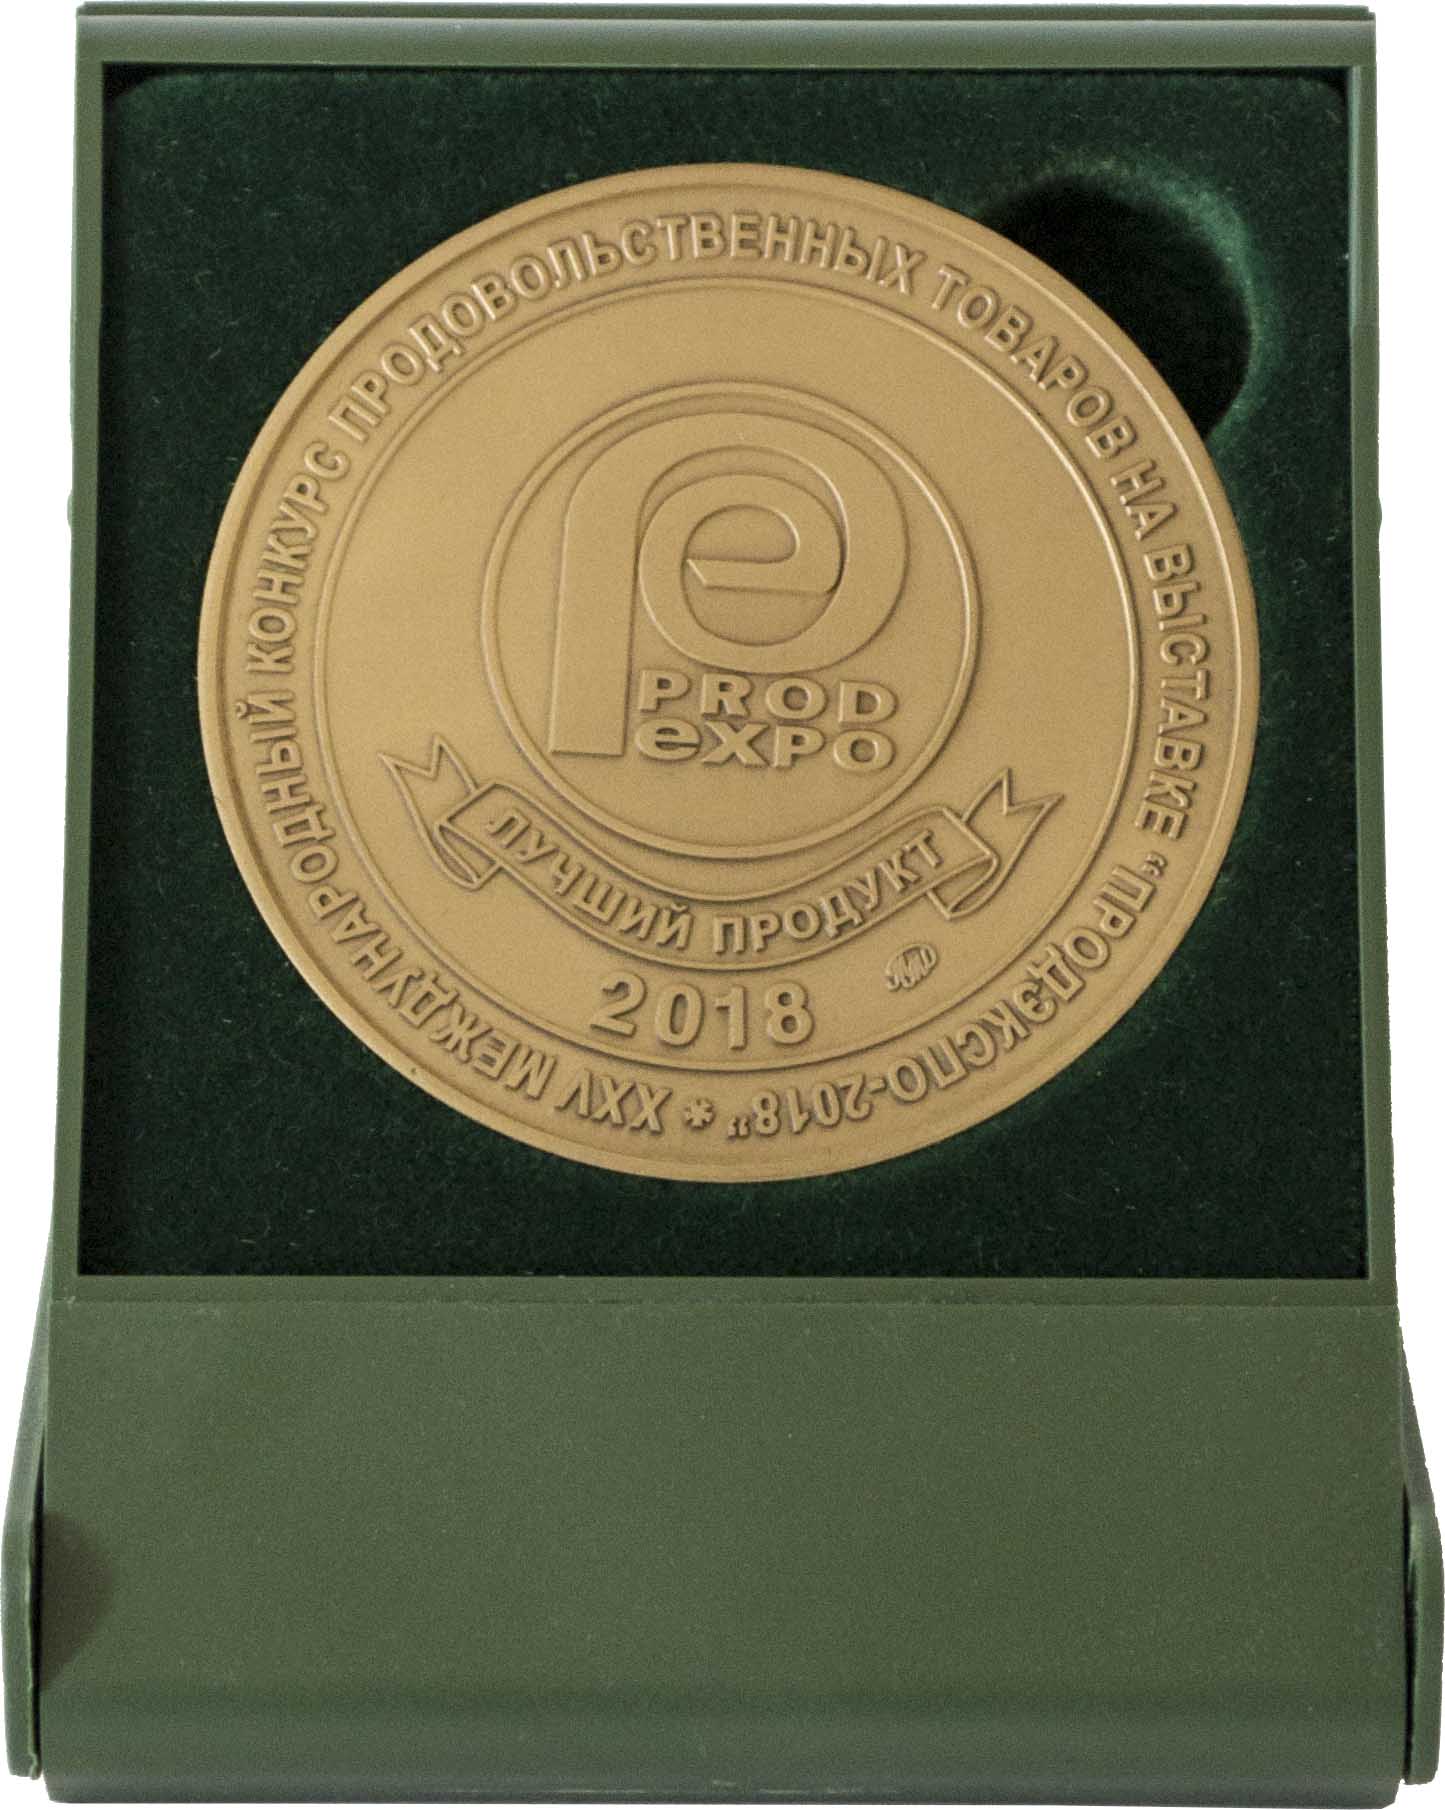 Лучший продукт ПРОД ЭКСПО 2018 - Бронзовая медаль в Футляре